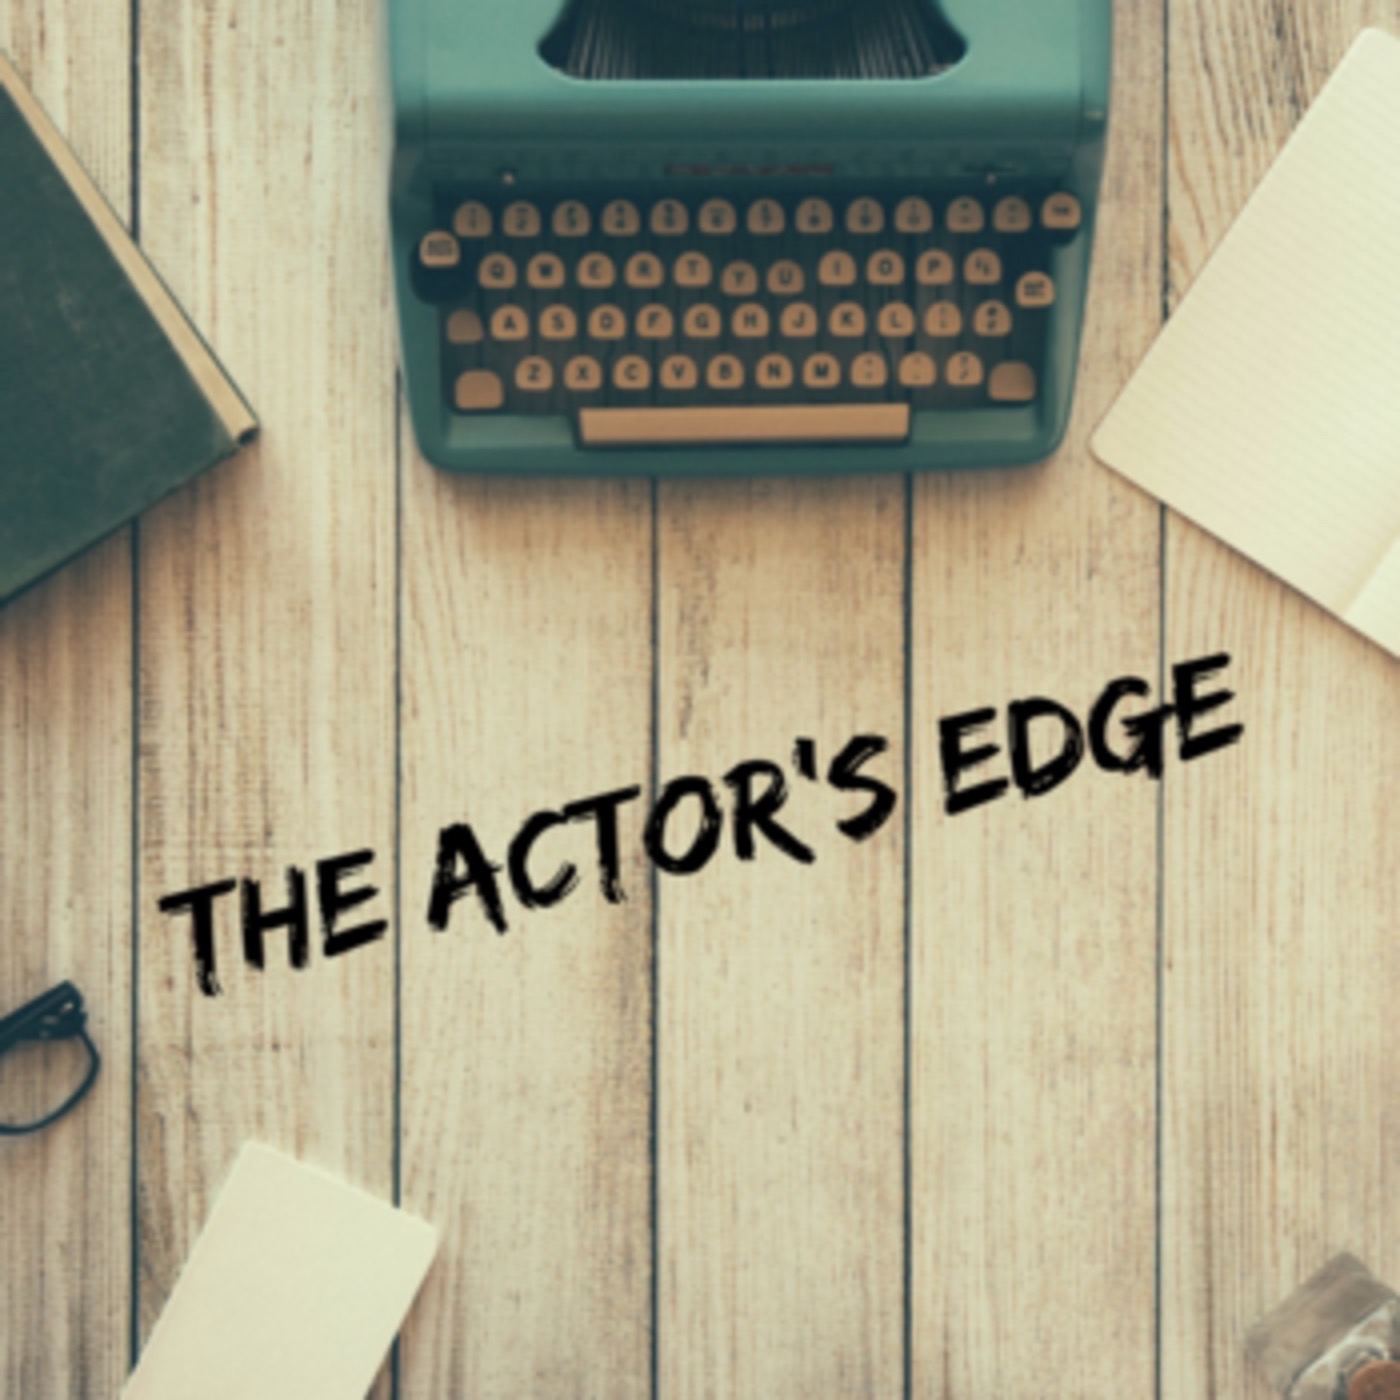 The Actor's Edge